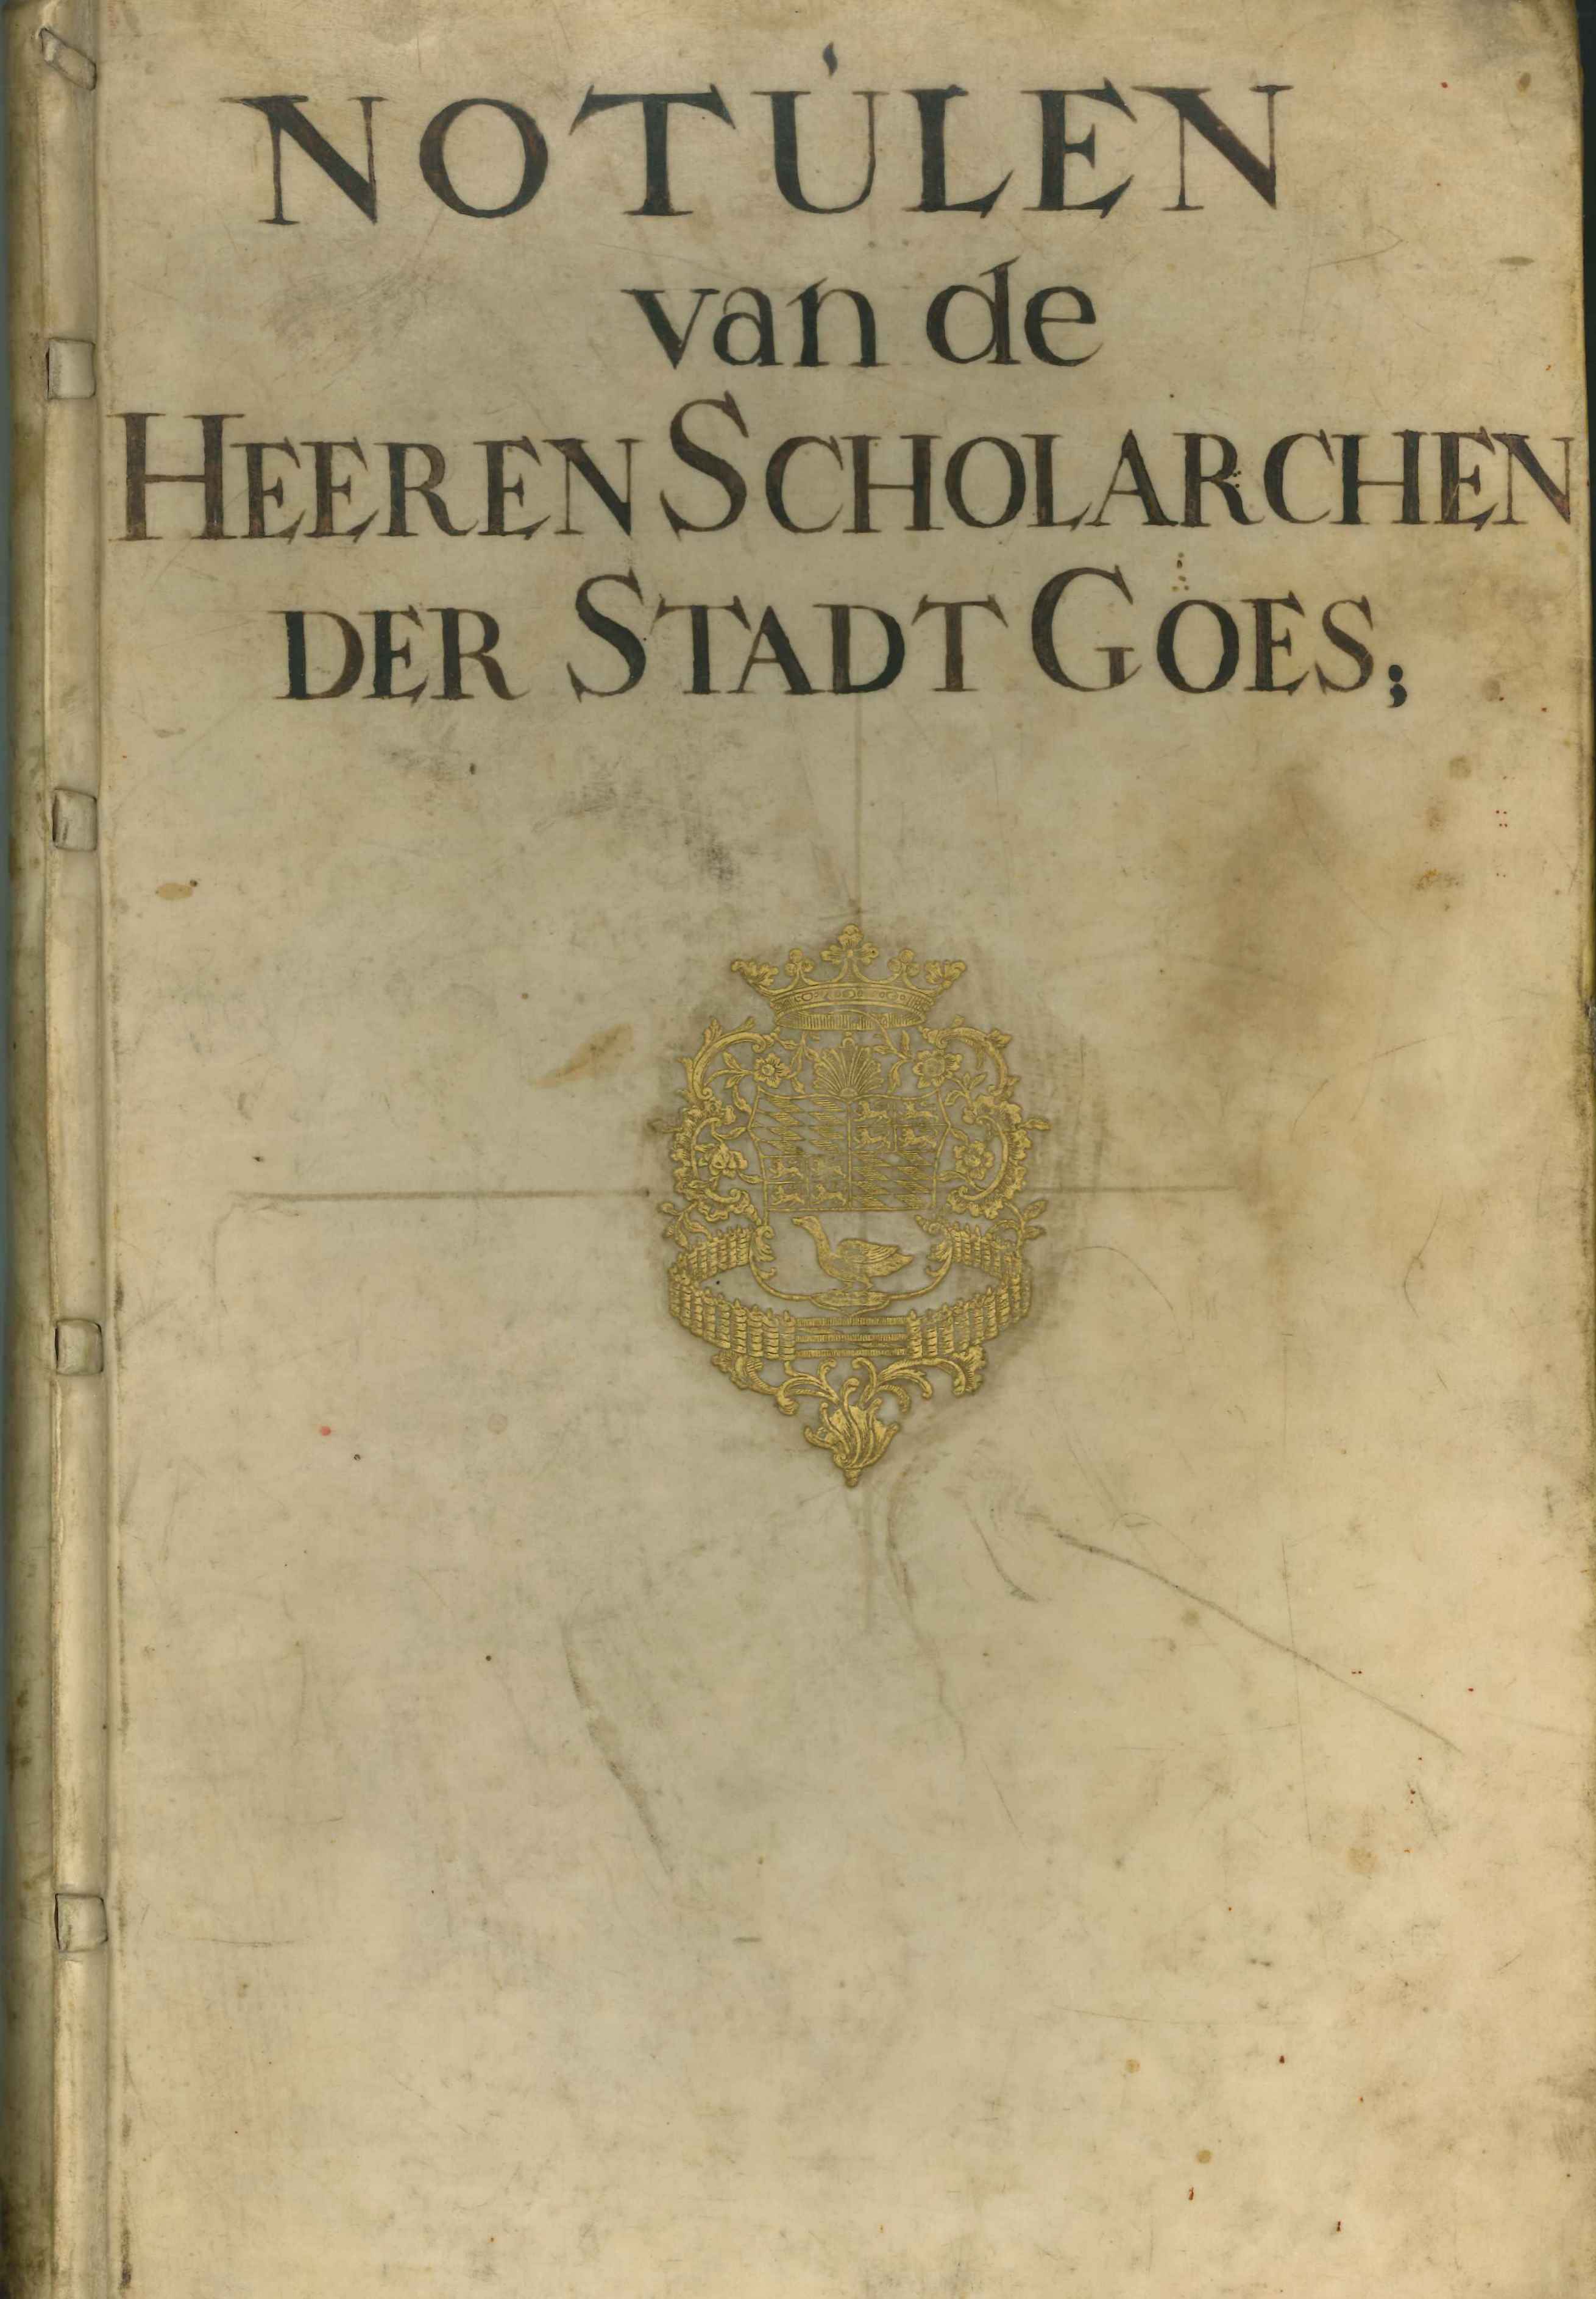 Omslag van een notulenboek van de scholarchen, met daarin een dagboek van P.A. Boreel de Mauregnault, 2de helft 18e eeuw.